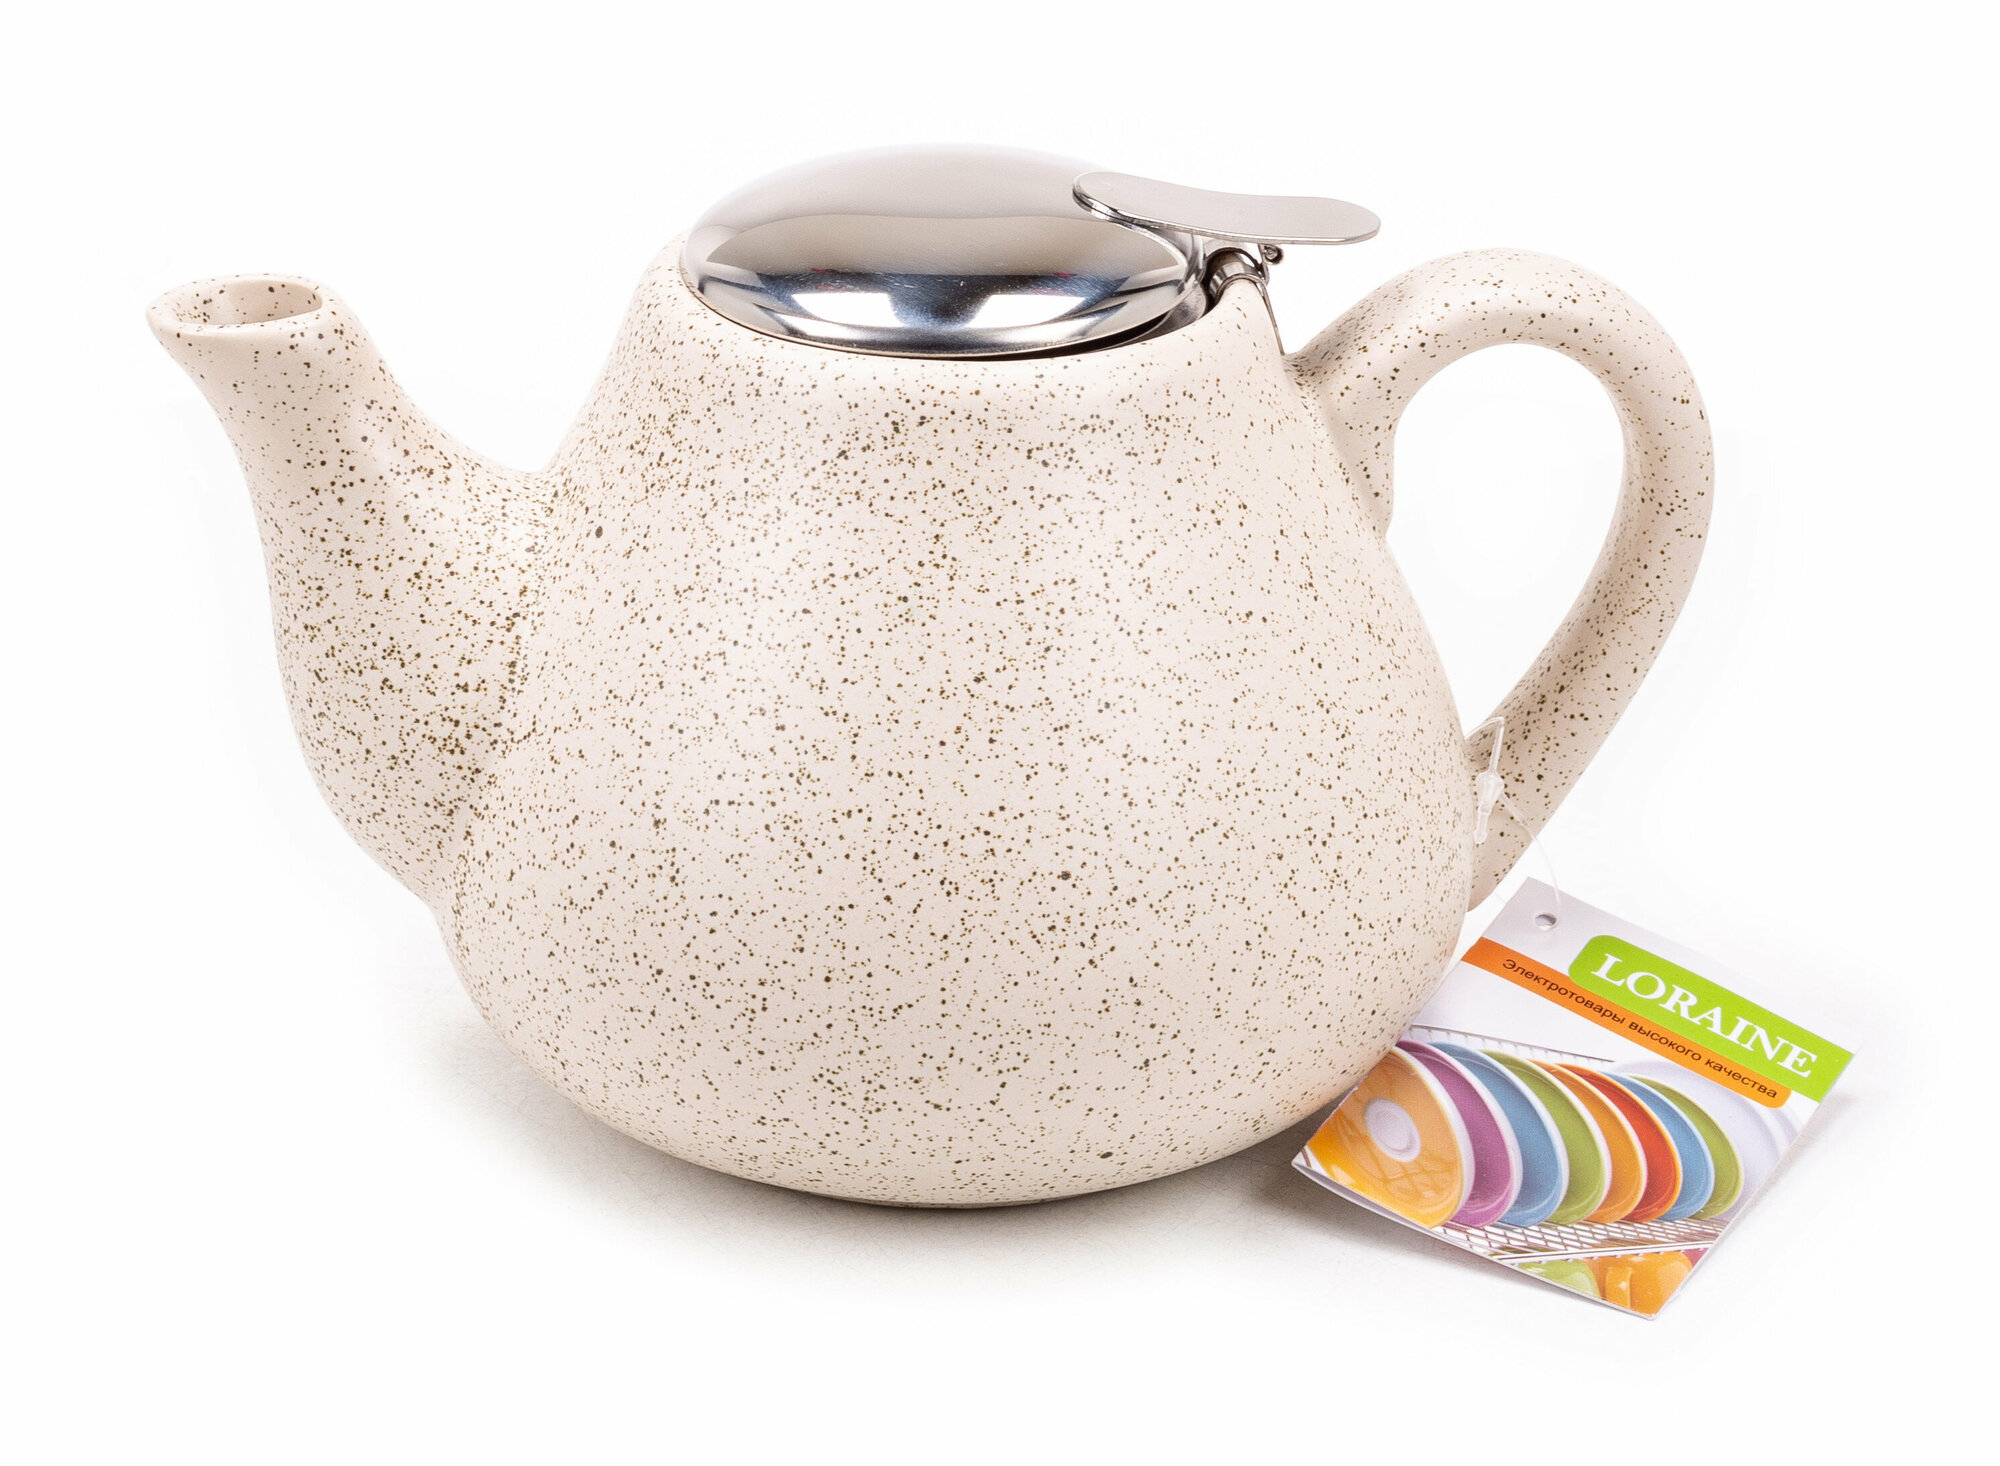 Чайник заварочный керамический Loraine / Лорейн, бежевый, с фильтром, 950мл / посуда для чая